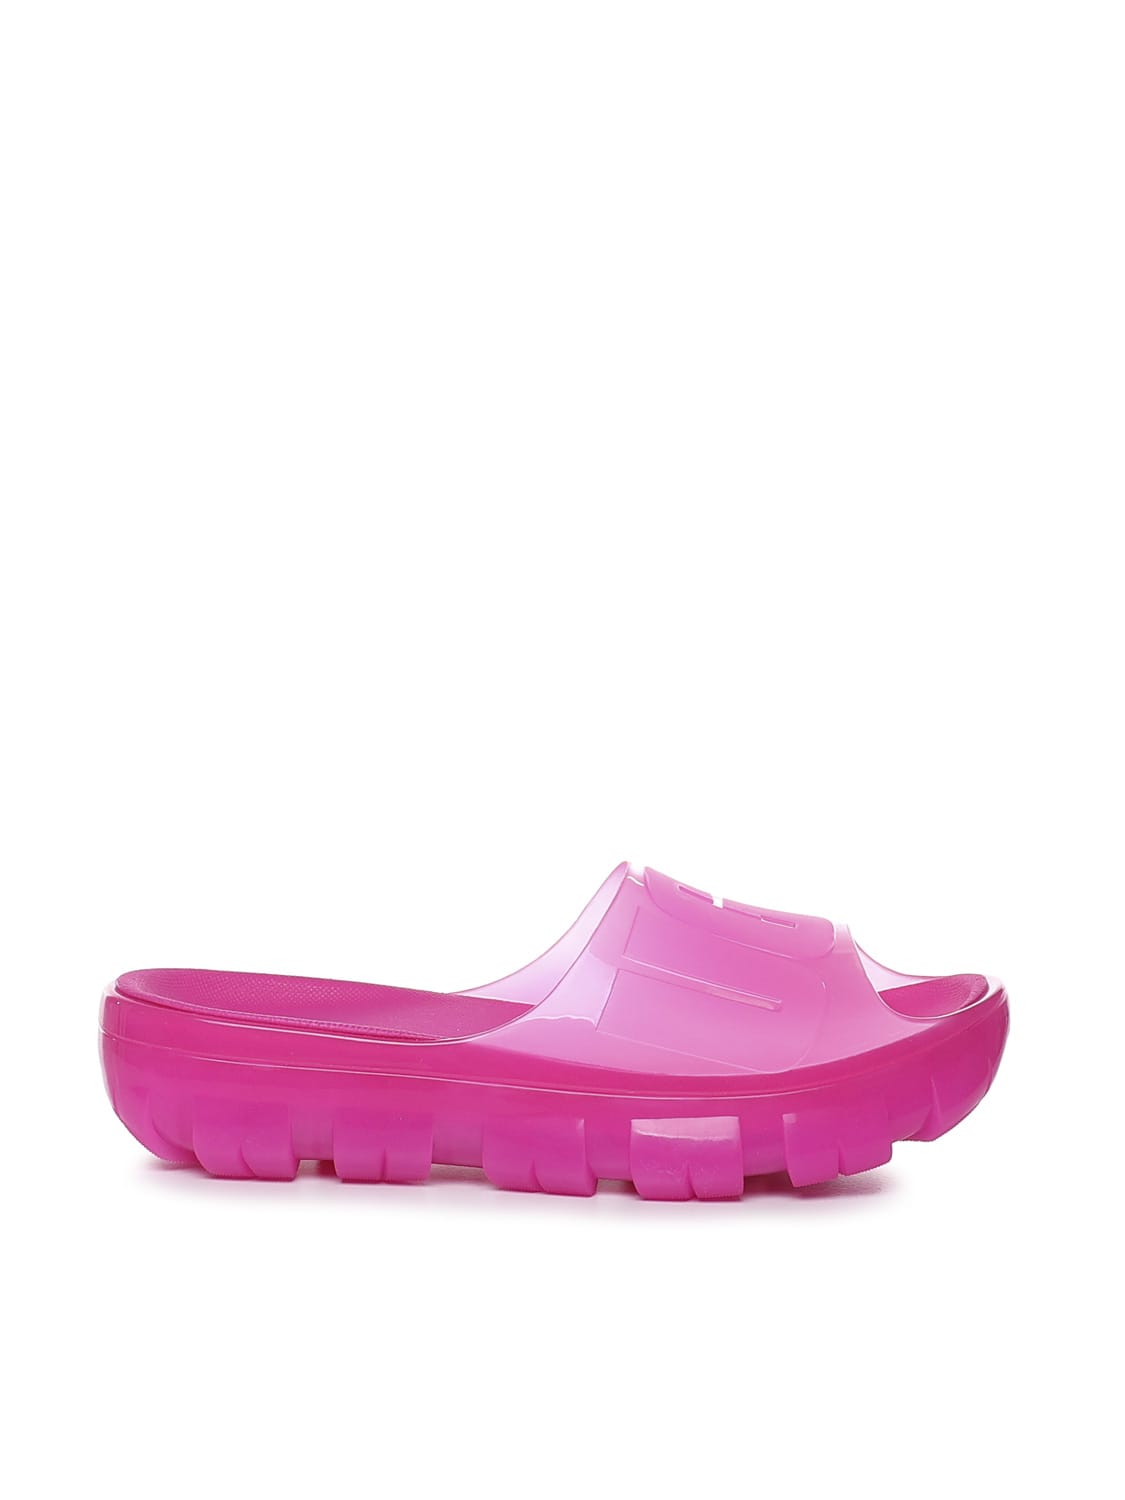 UGG Slide Sandals